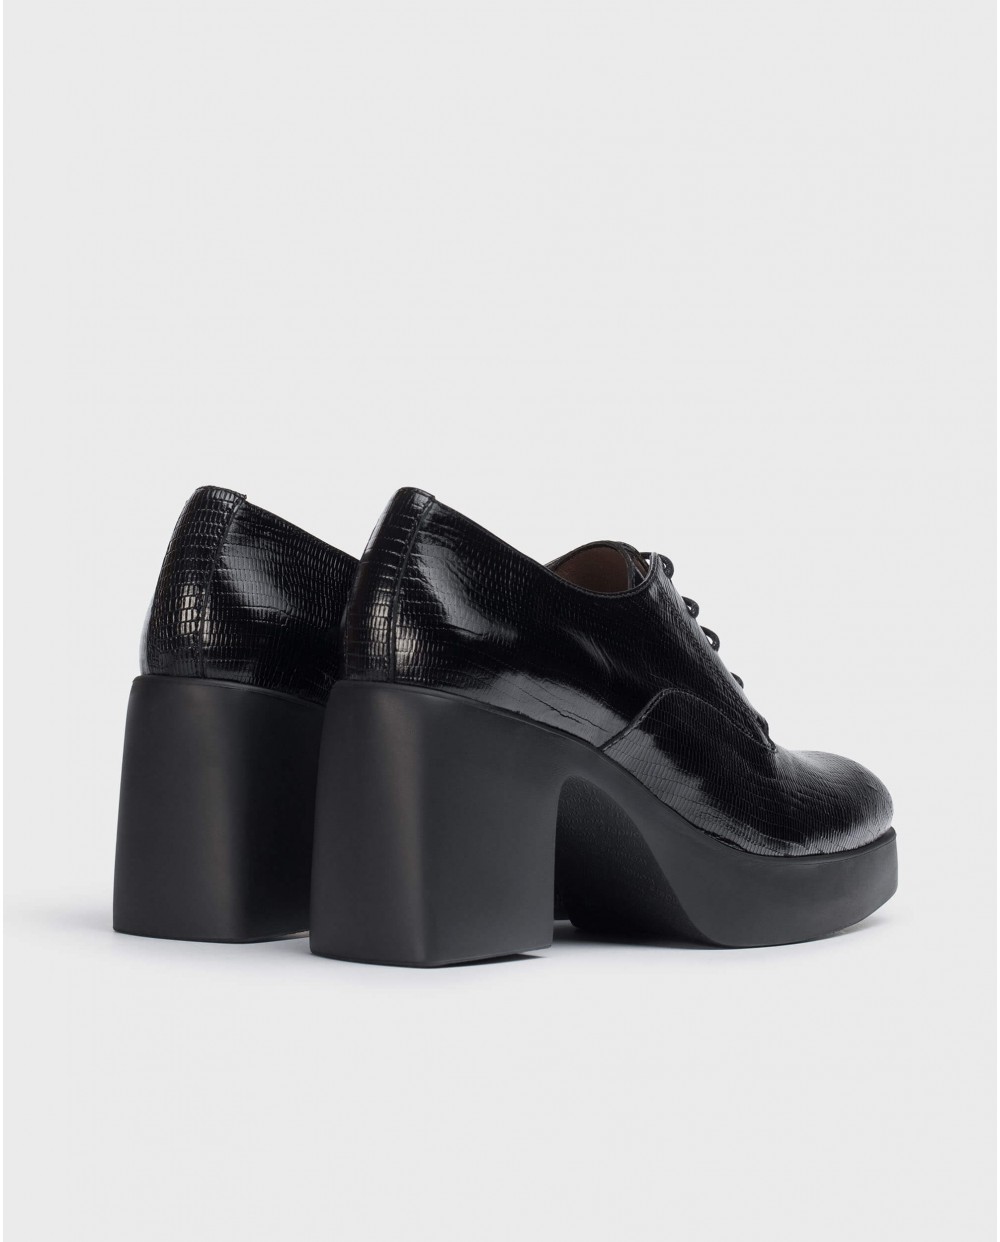 Wonders-Heels-Black Loira shoes.